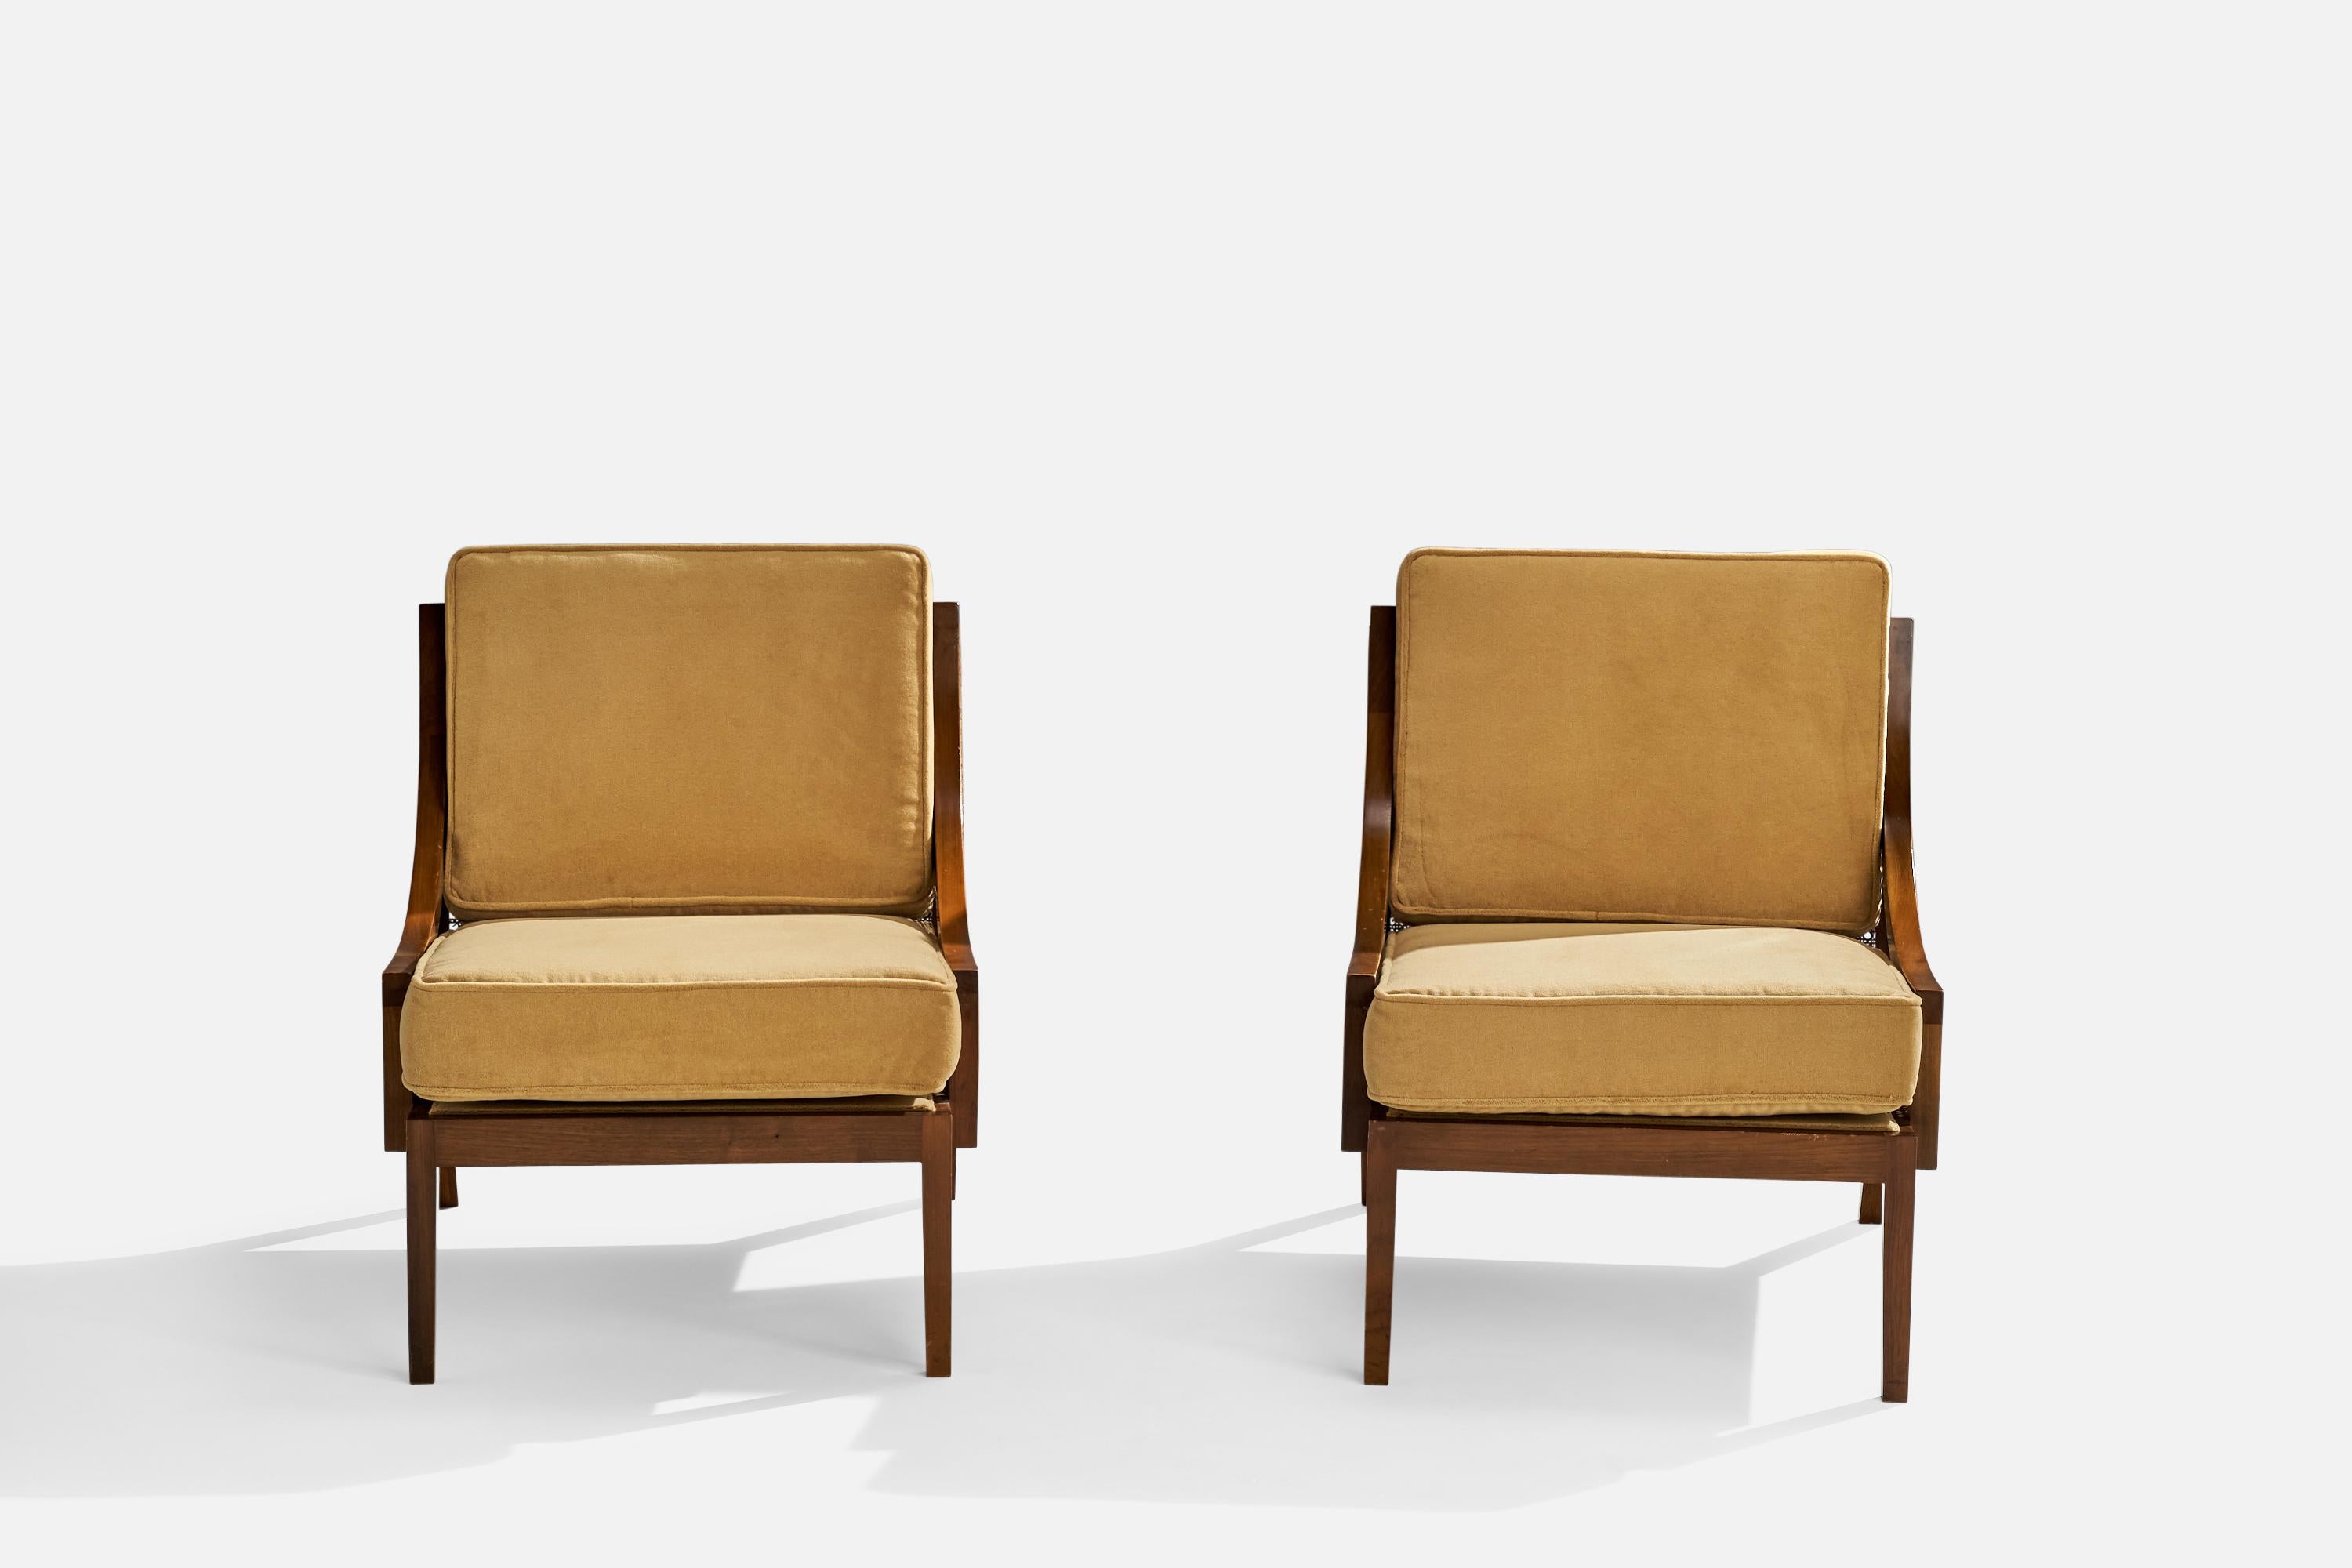 Mid-20th Century American Designer, Slipper Chairs, Walnut, Velvet, Rattan, USA, 1950s For Sale